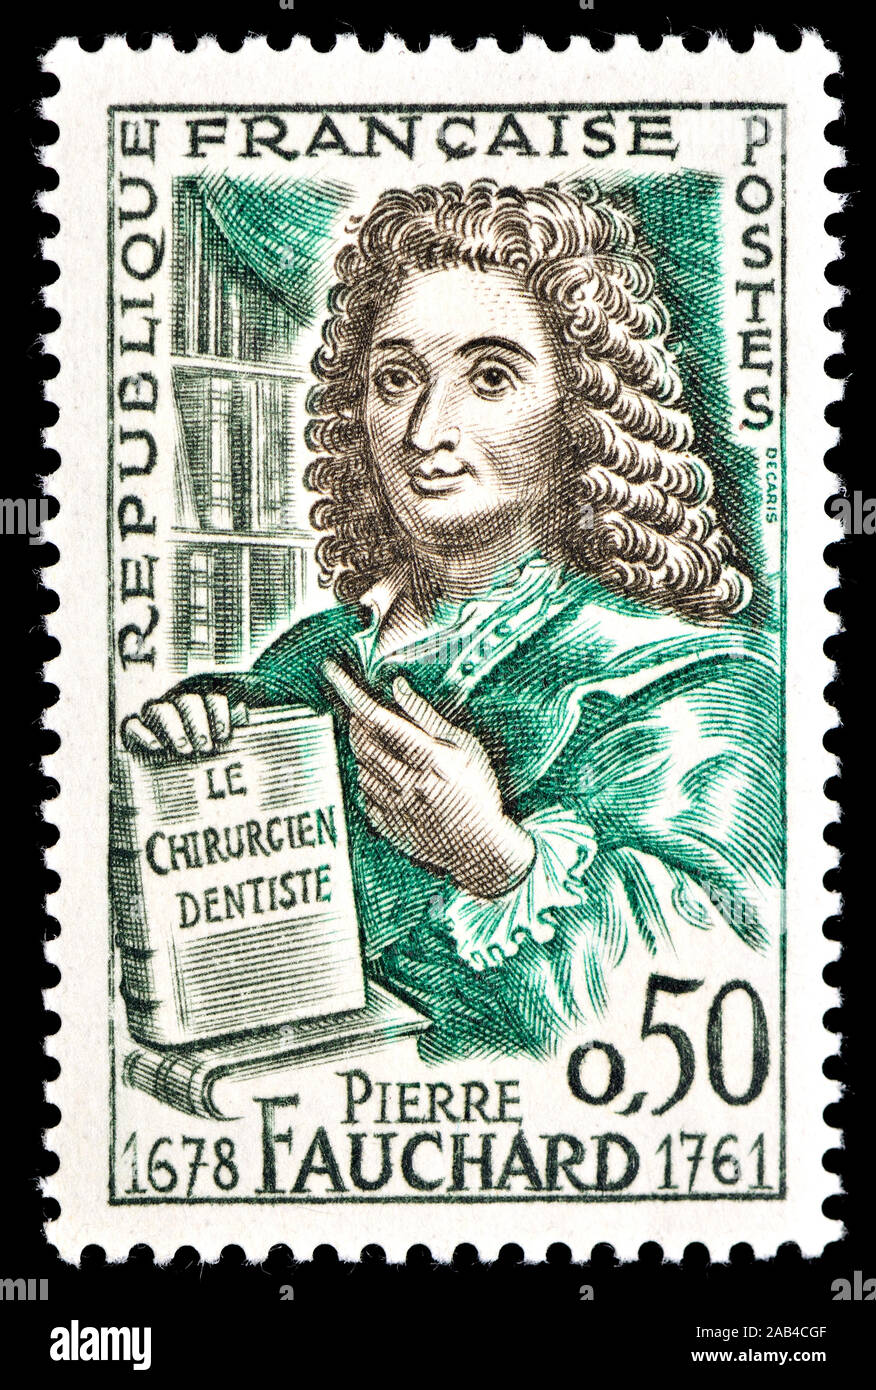 Il francese francobollo (1961) : Pierre Fauchard (1678-1761) medico francese, accreditato come il "padre della moderna odontoiatria" Foto Stock